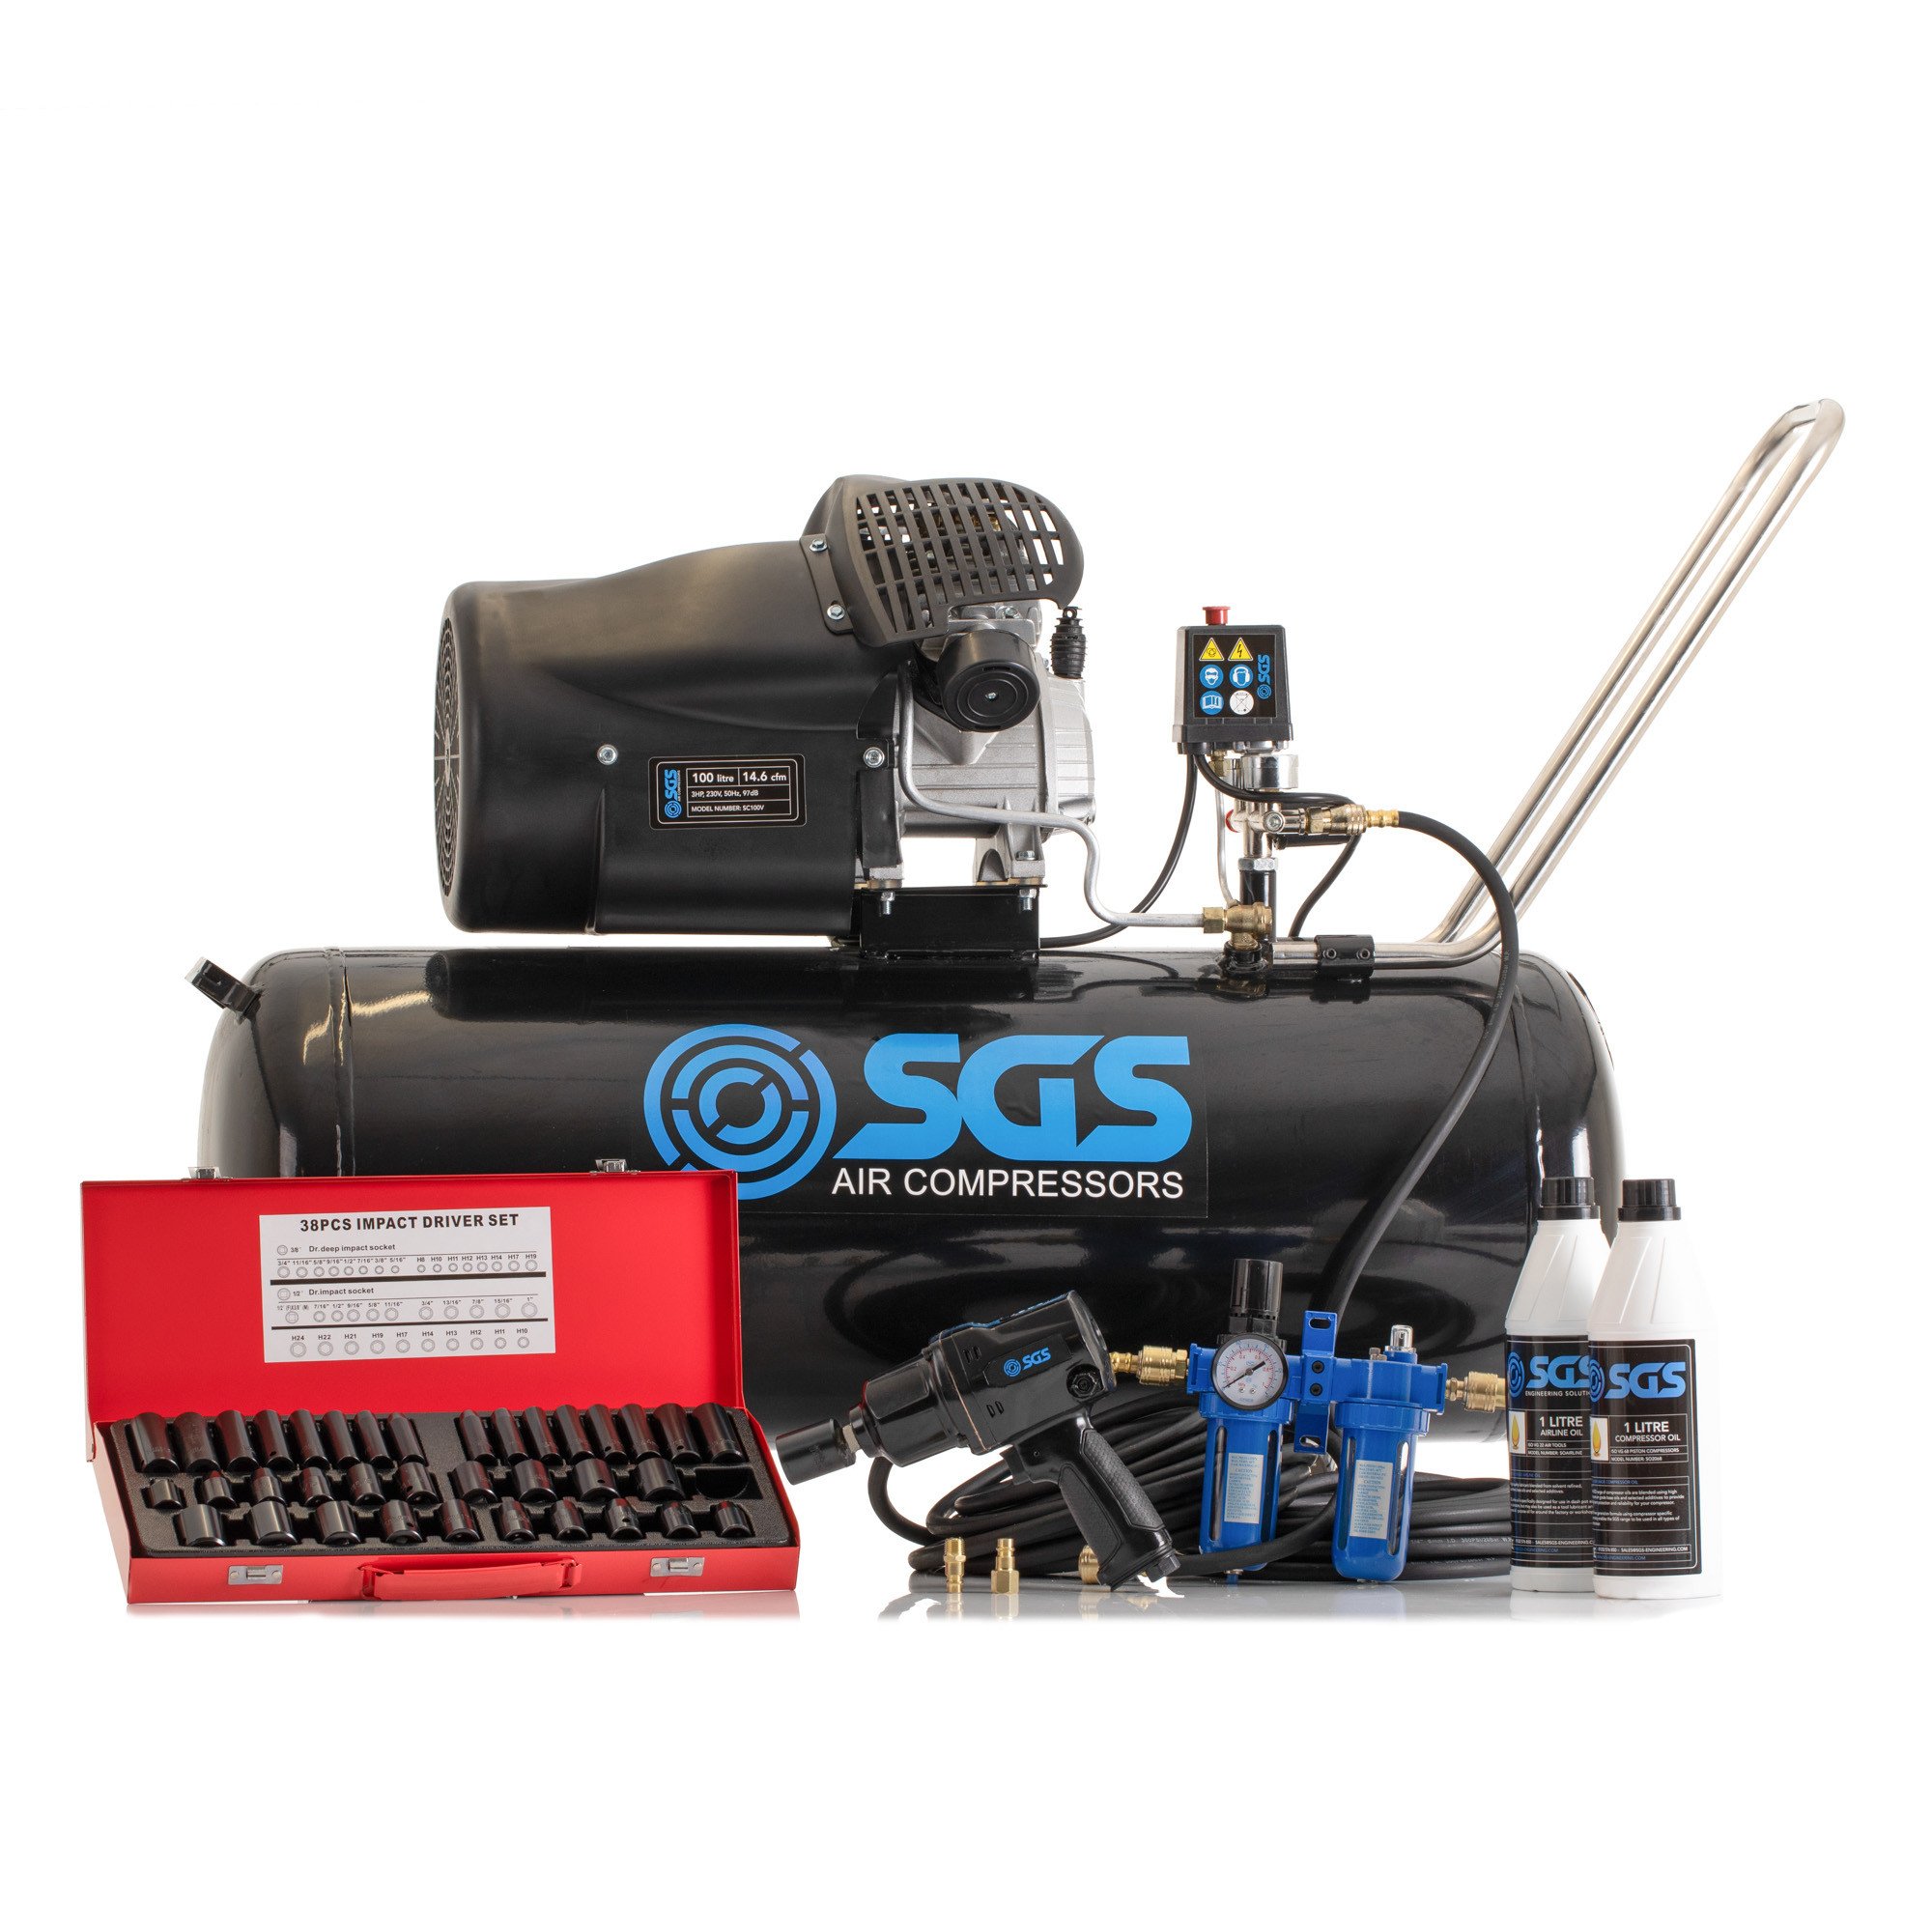 SGS 100升直接驱动空气压缩机和重型棘轮套件- 14.6CFM 3.0HP 100L